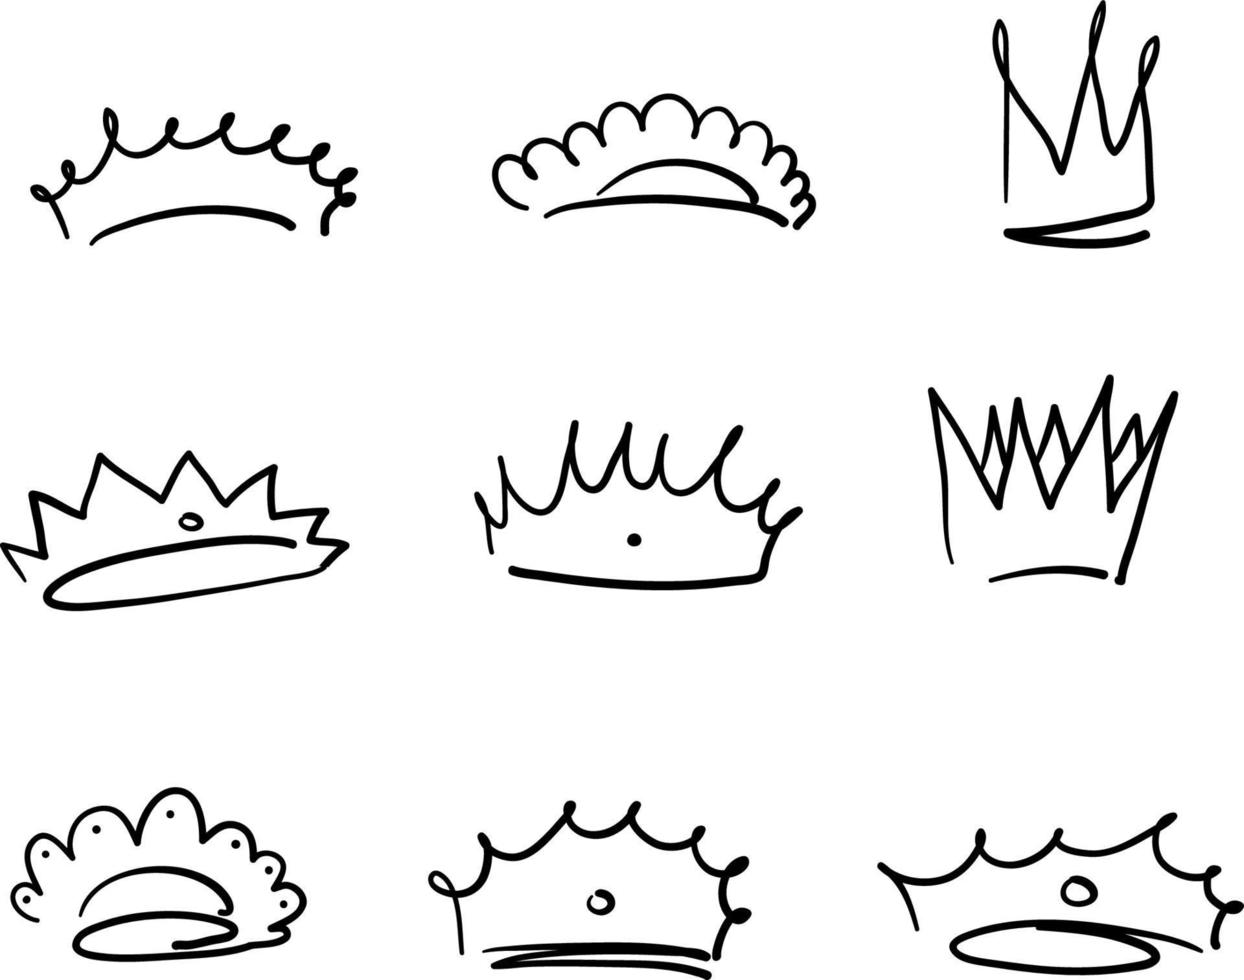 Doodle desenhado à mão coroa rainha real princesa logotipo ícone de graffiti com fundo isolado estilo cartoon vetor